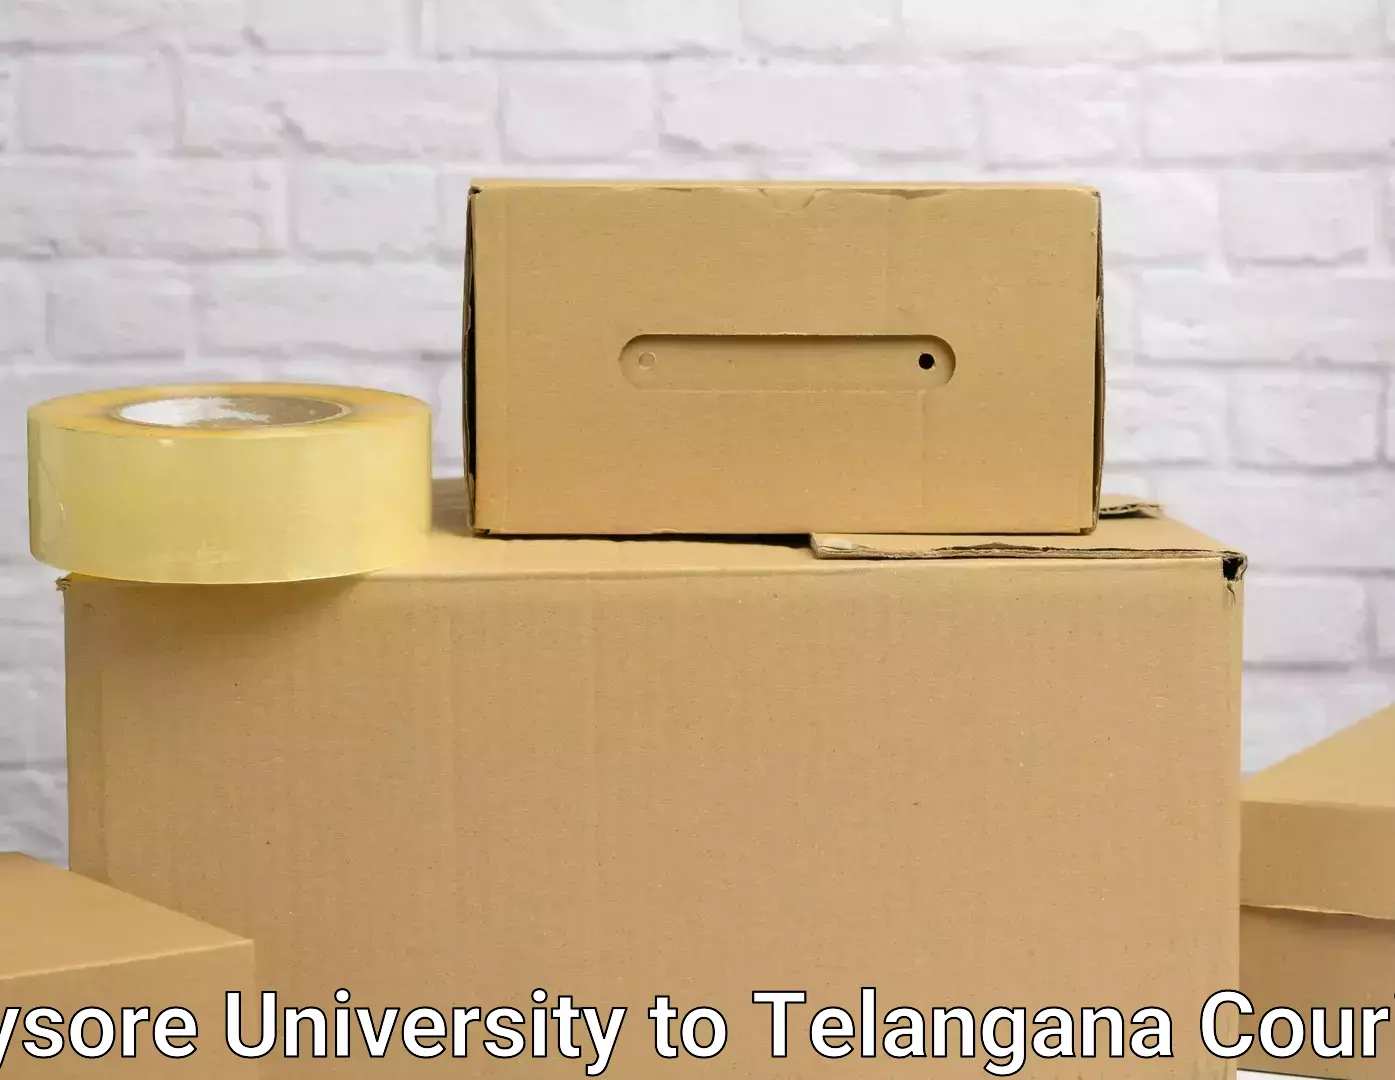 Skilled furniture movers Mysore University to Ibrahimpatnam